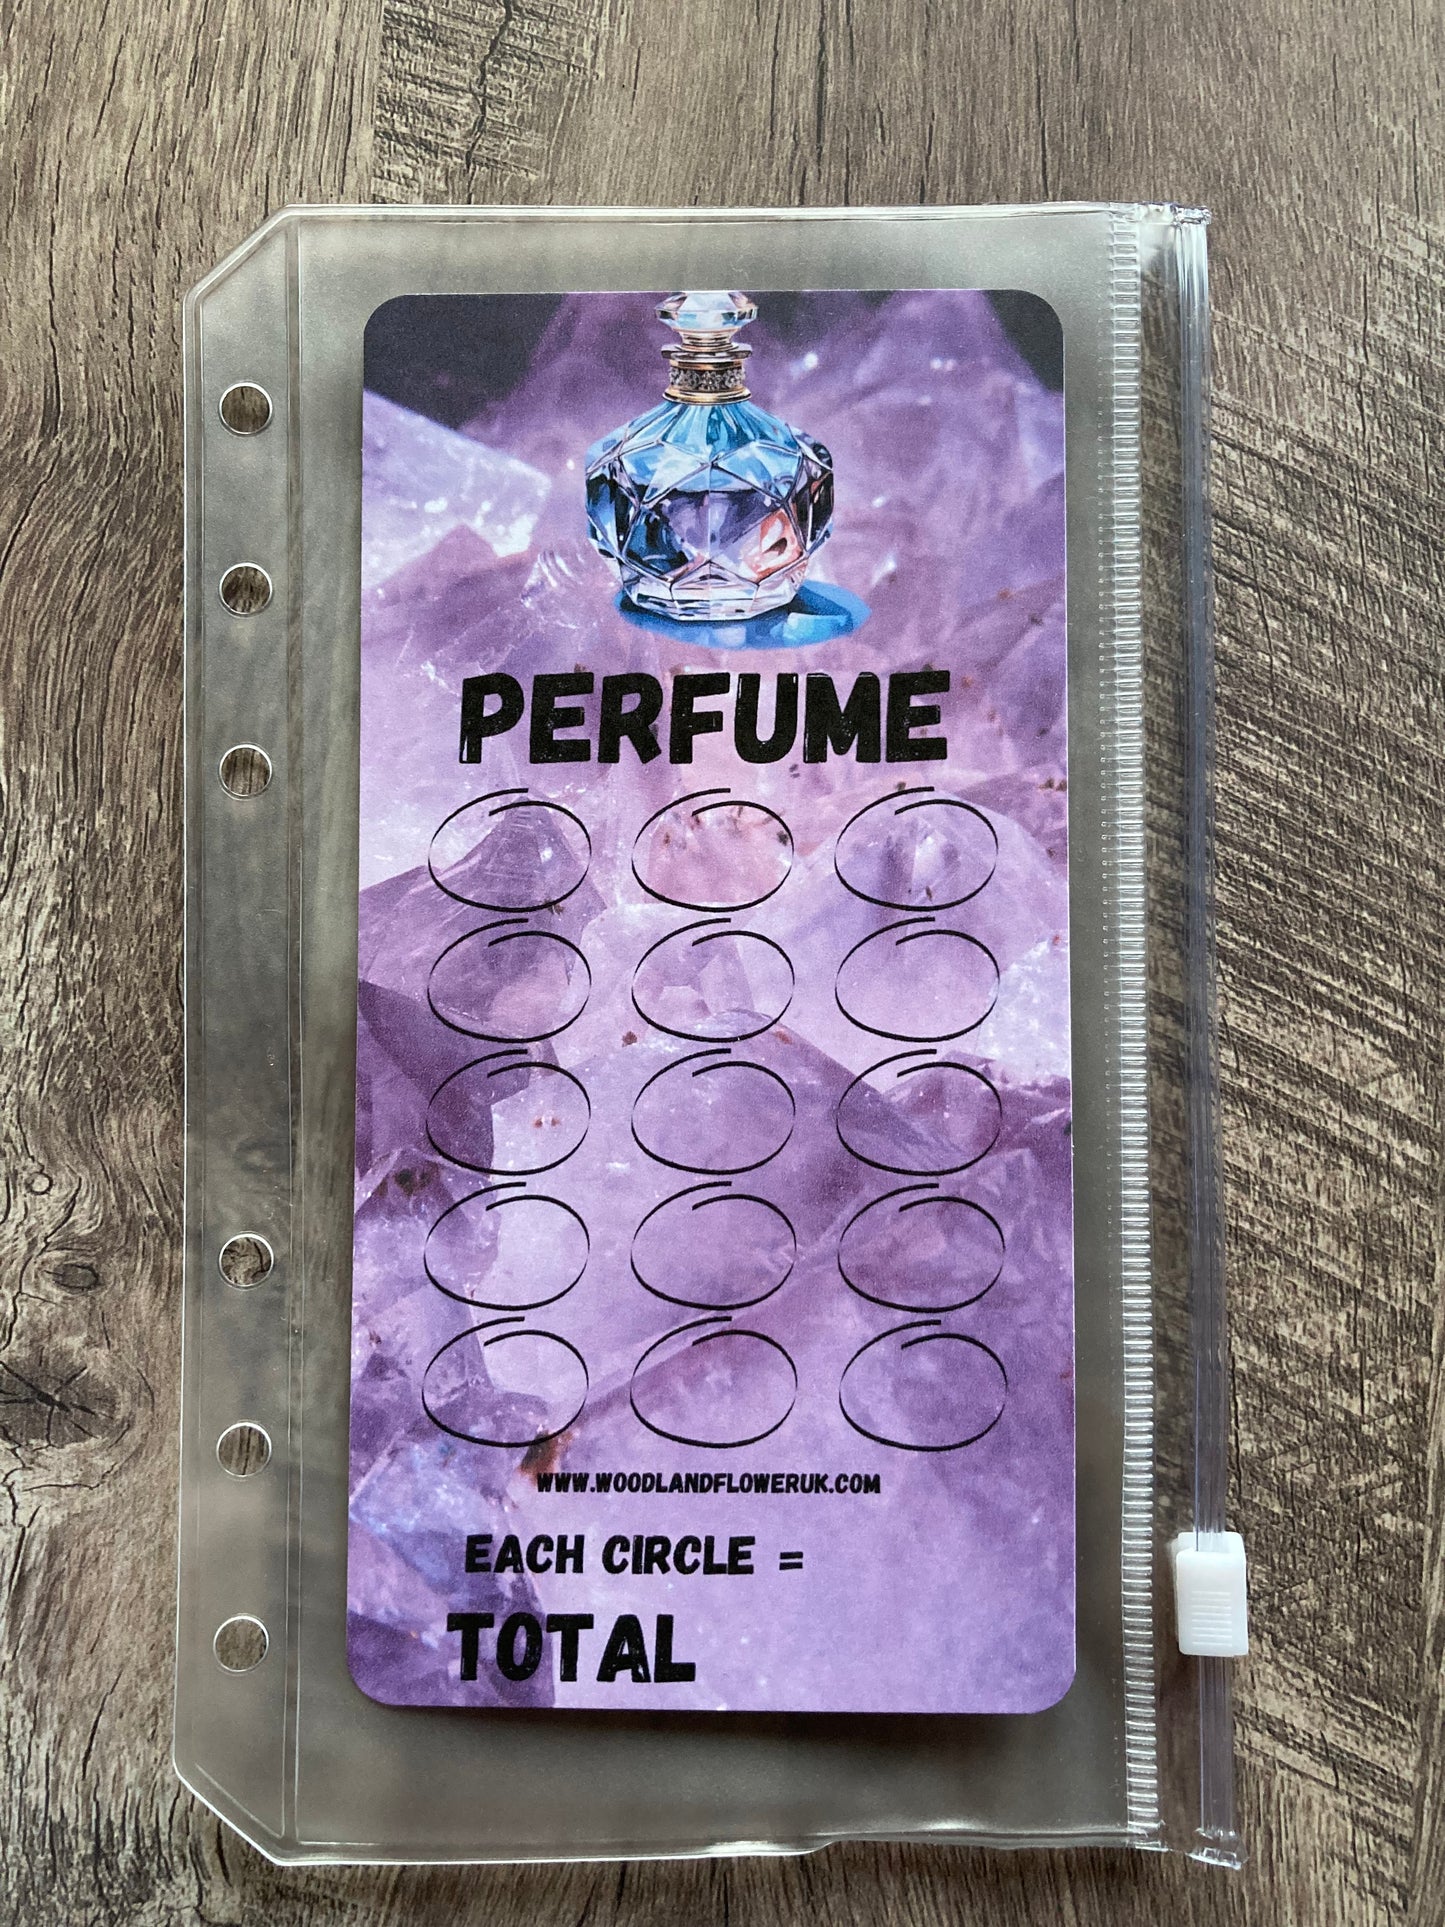 Saving challenge “perfume”